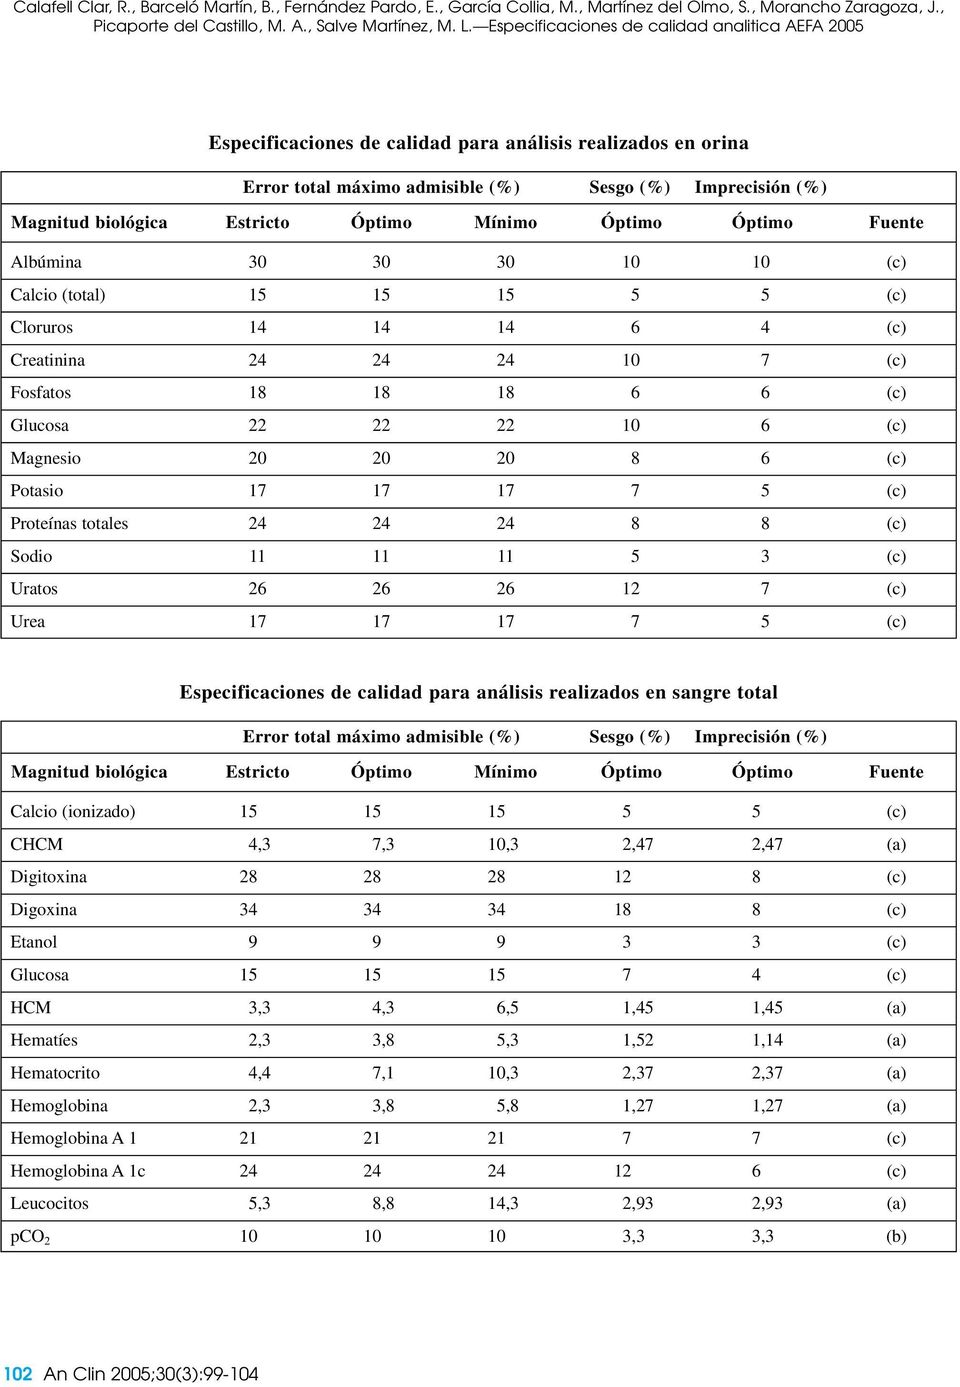 Especificaciones de calidad para análisis realizados en sangre total Calcio (ionizado) 15 15 15 5 5 (c) CHCM 4,3 7,3 10,3 2,47 2,47 (a) Digitoxina 28 28 28 12 8 (c) Digoxina 34 34 34 18 8 (c) Etanol